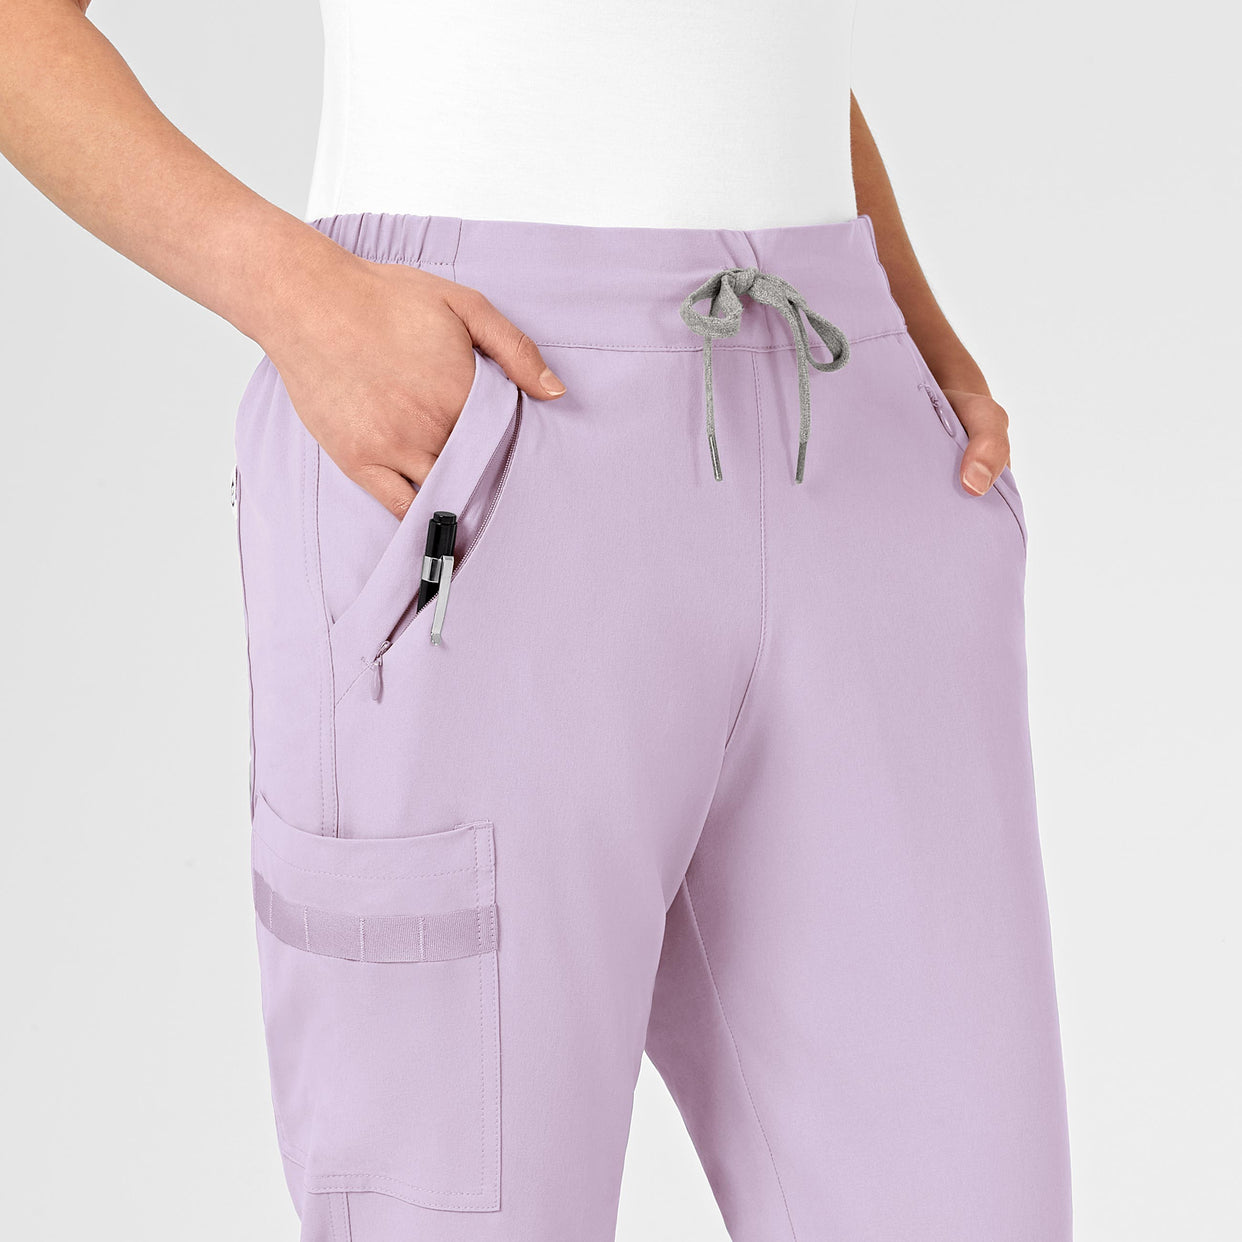 RENEW Women's Jogger Scrub Pant Pastel Lilac pocket detail